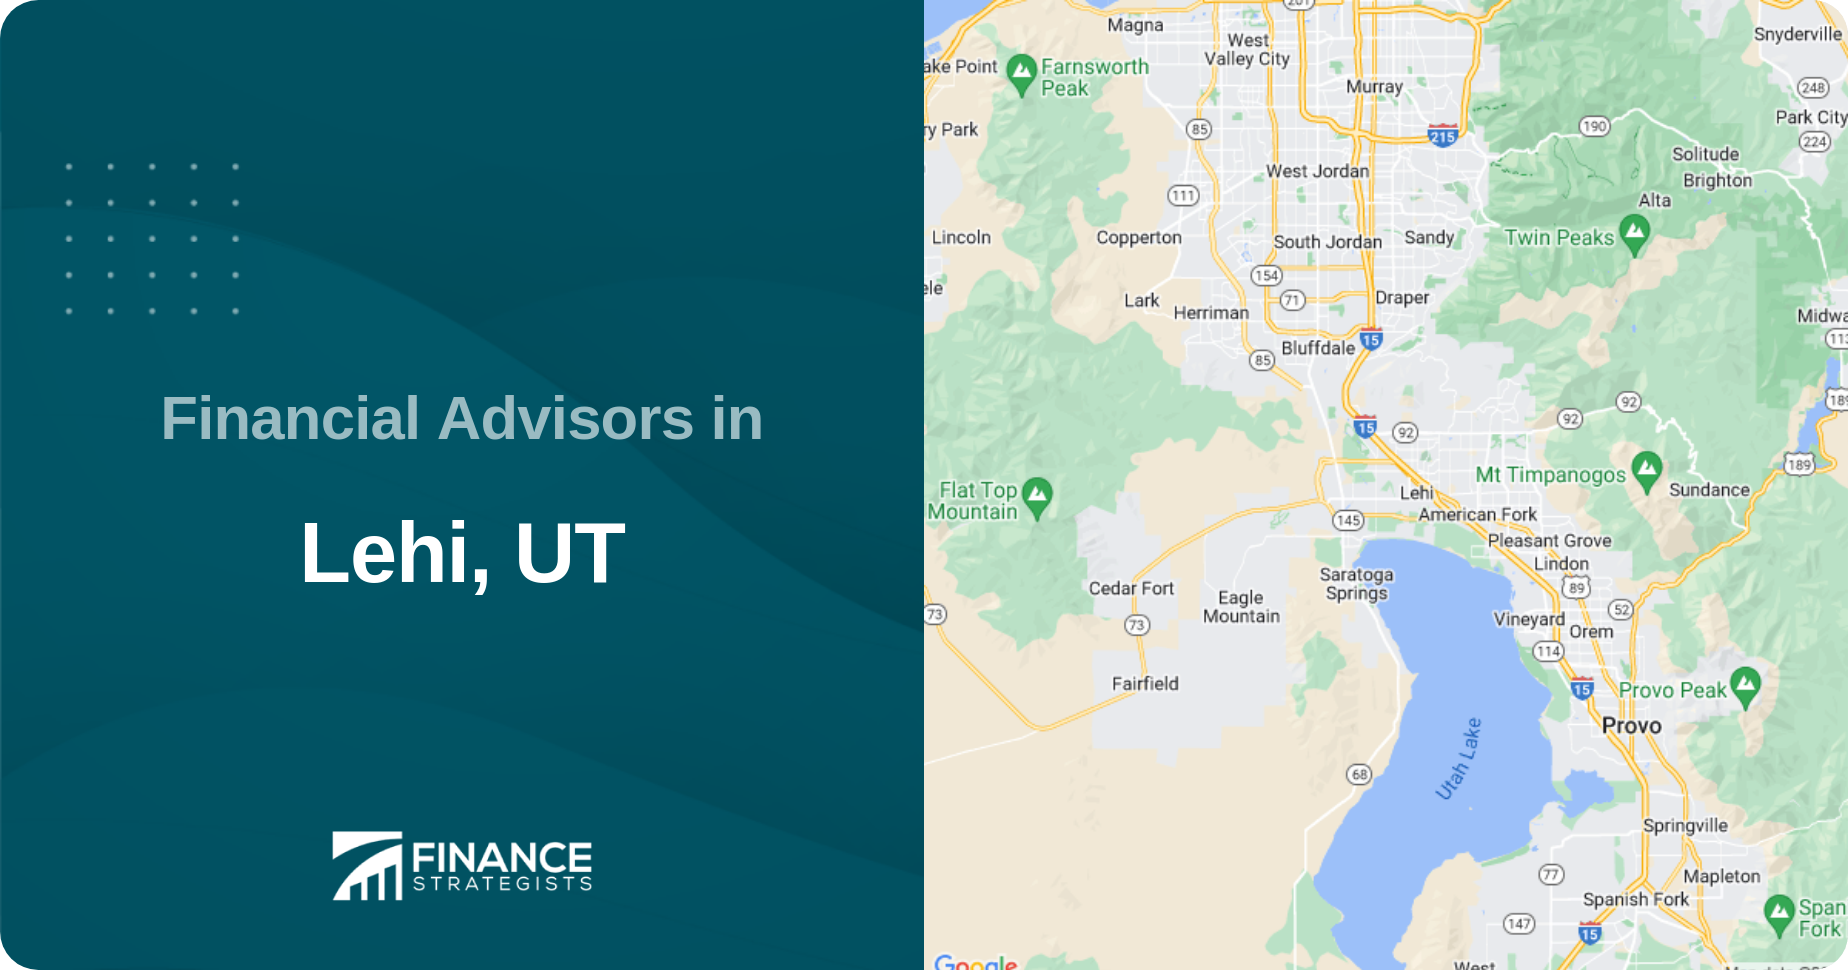 Financial Advisors in Lehi, UT